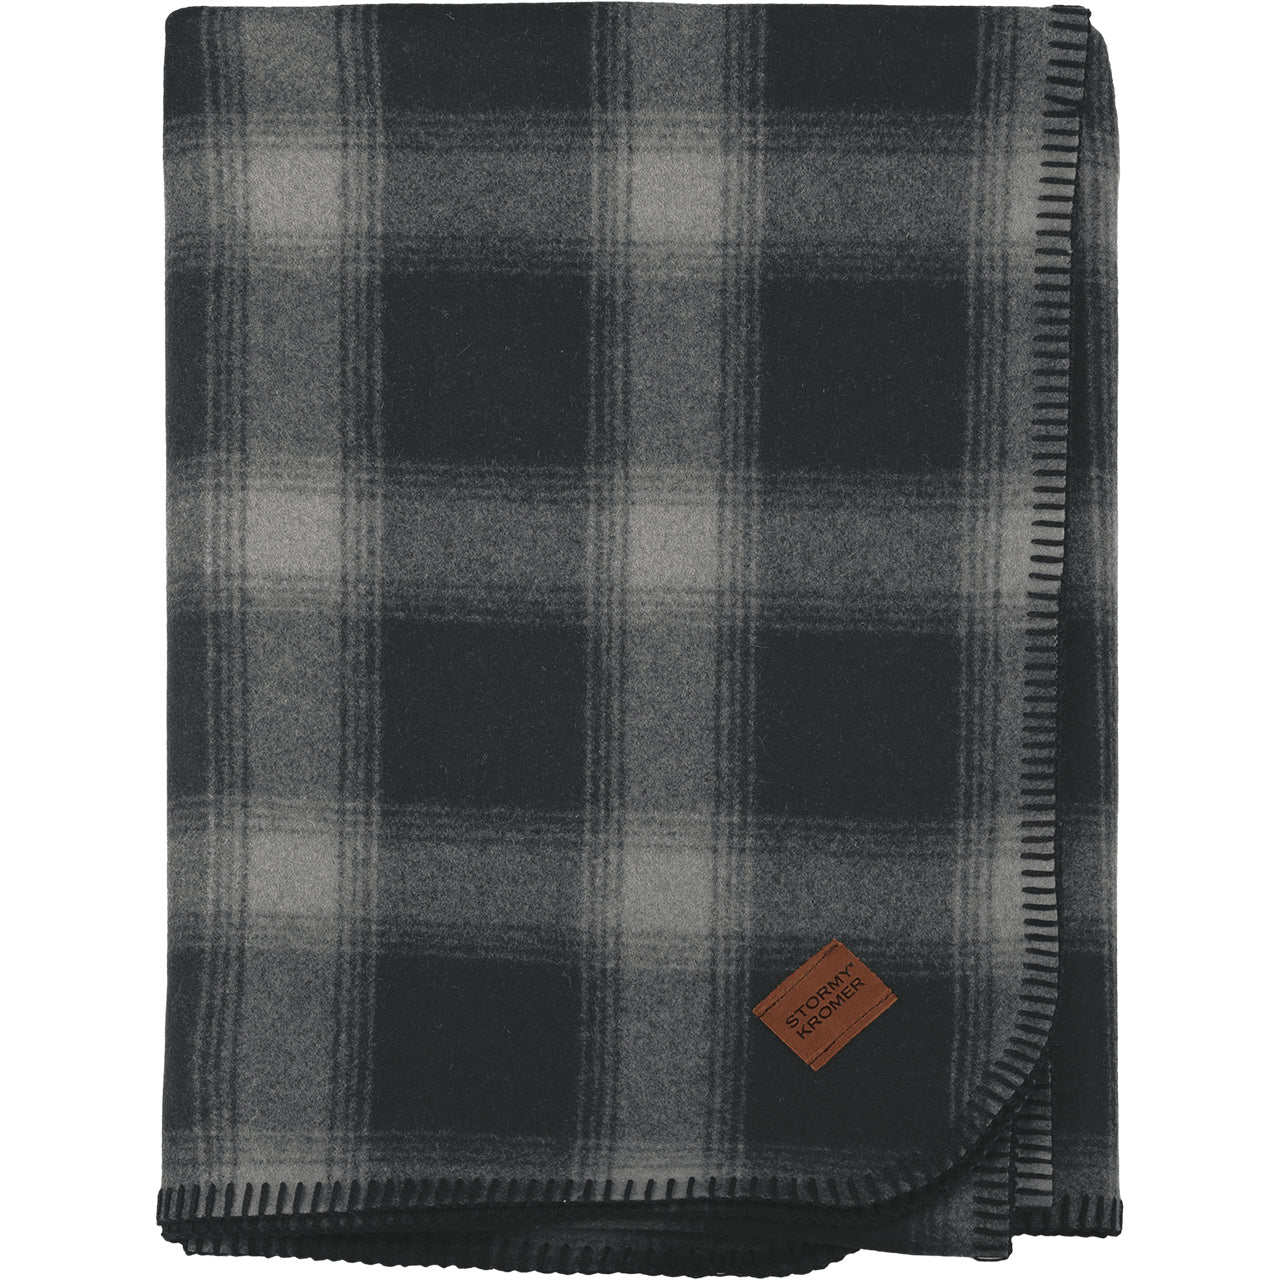 Stormy Kromer Wool Blend Blanket in Black/Grey Plaid